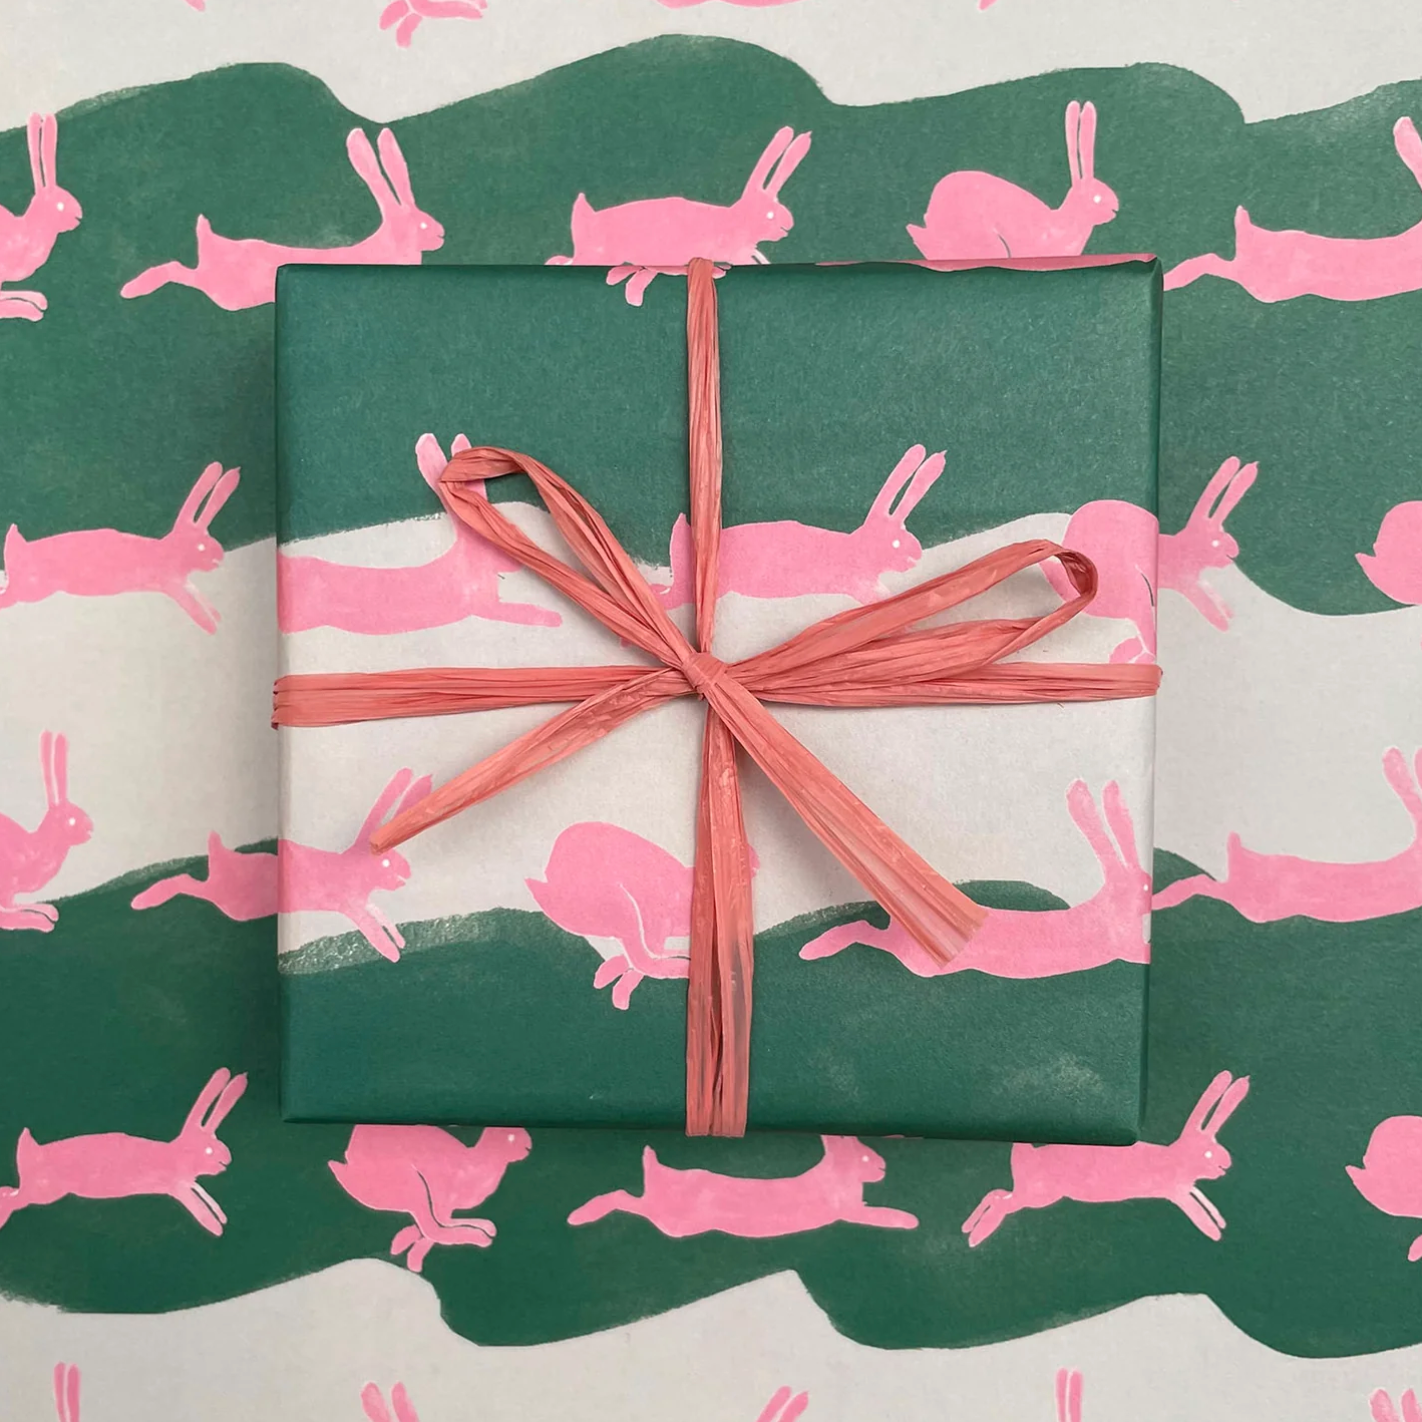 Running Wild Rabbit Wrapping Paper · Regaro Papiro